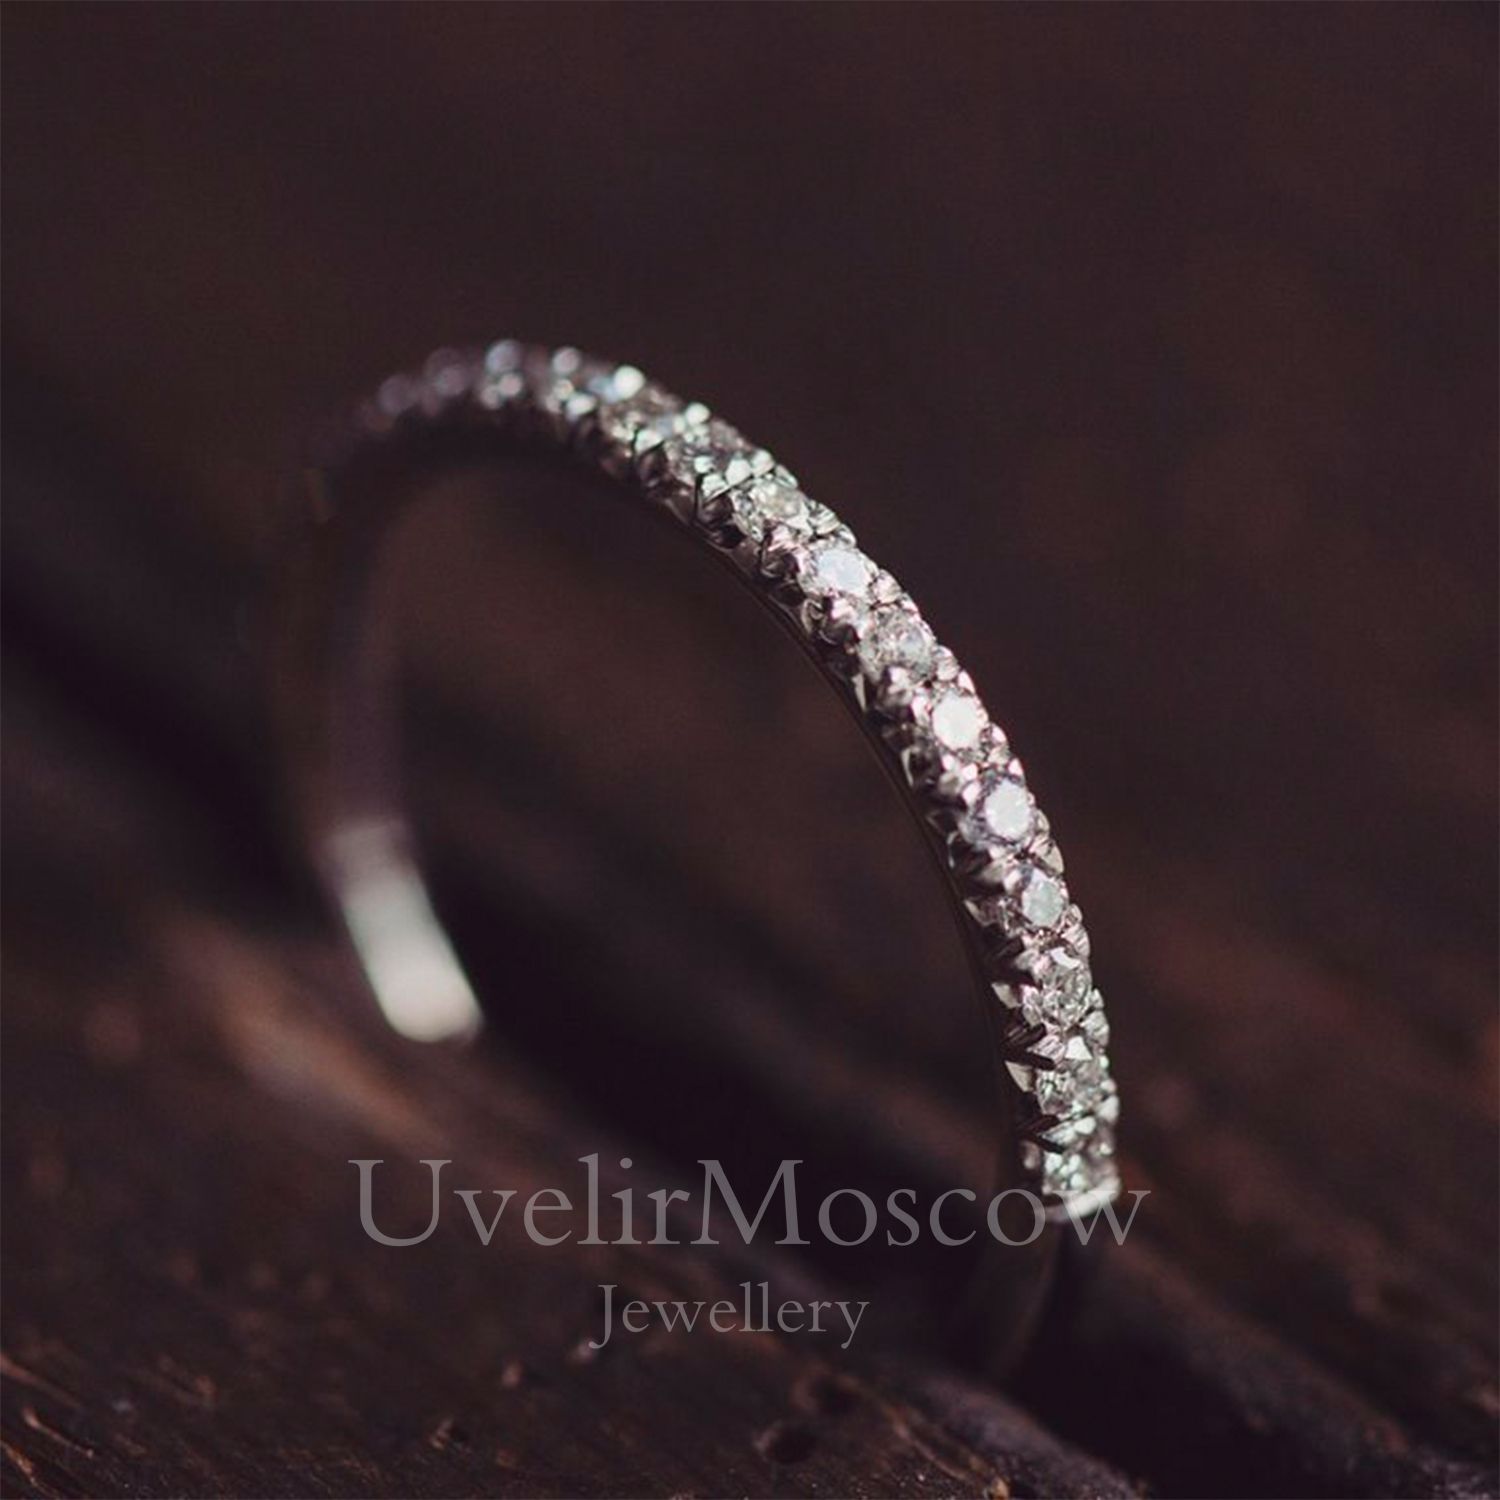 Изящное обручальное кольцо из белого золота с бриллиантами